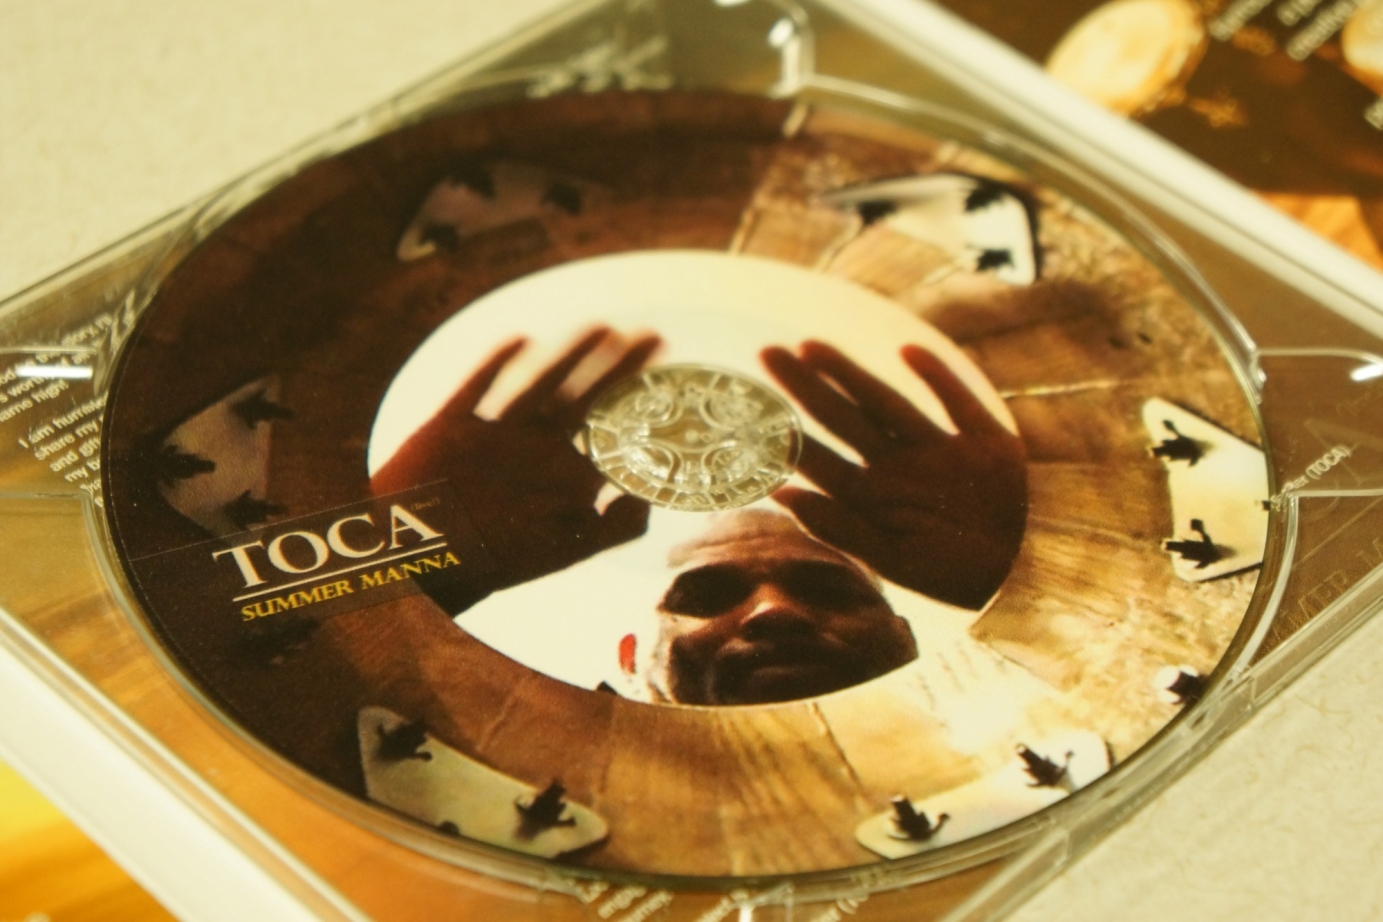 TOCA (Live!) [SIX PANNEL CD ART DESIGN + COMMERCIAL]